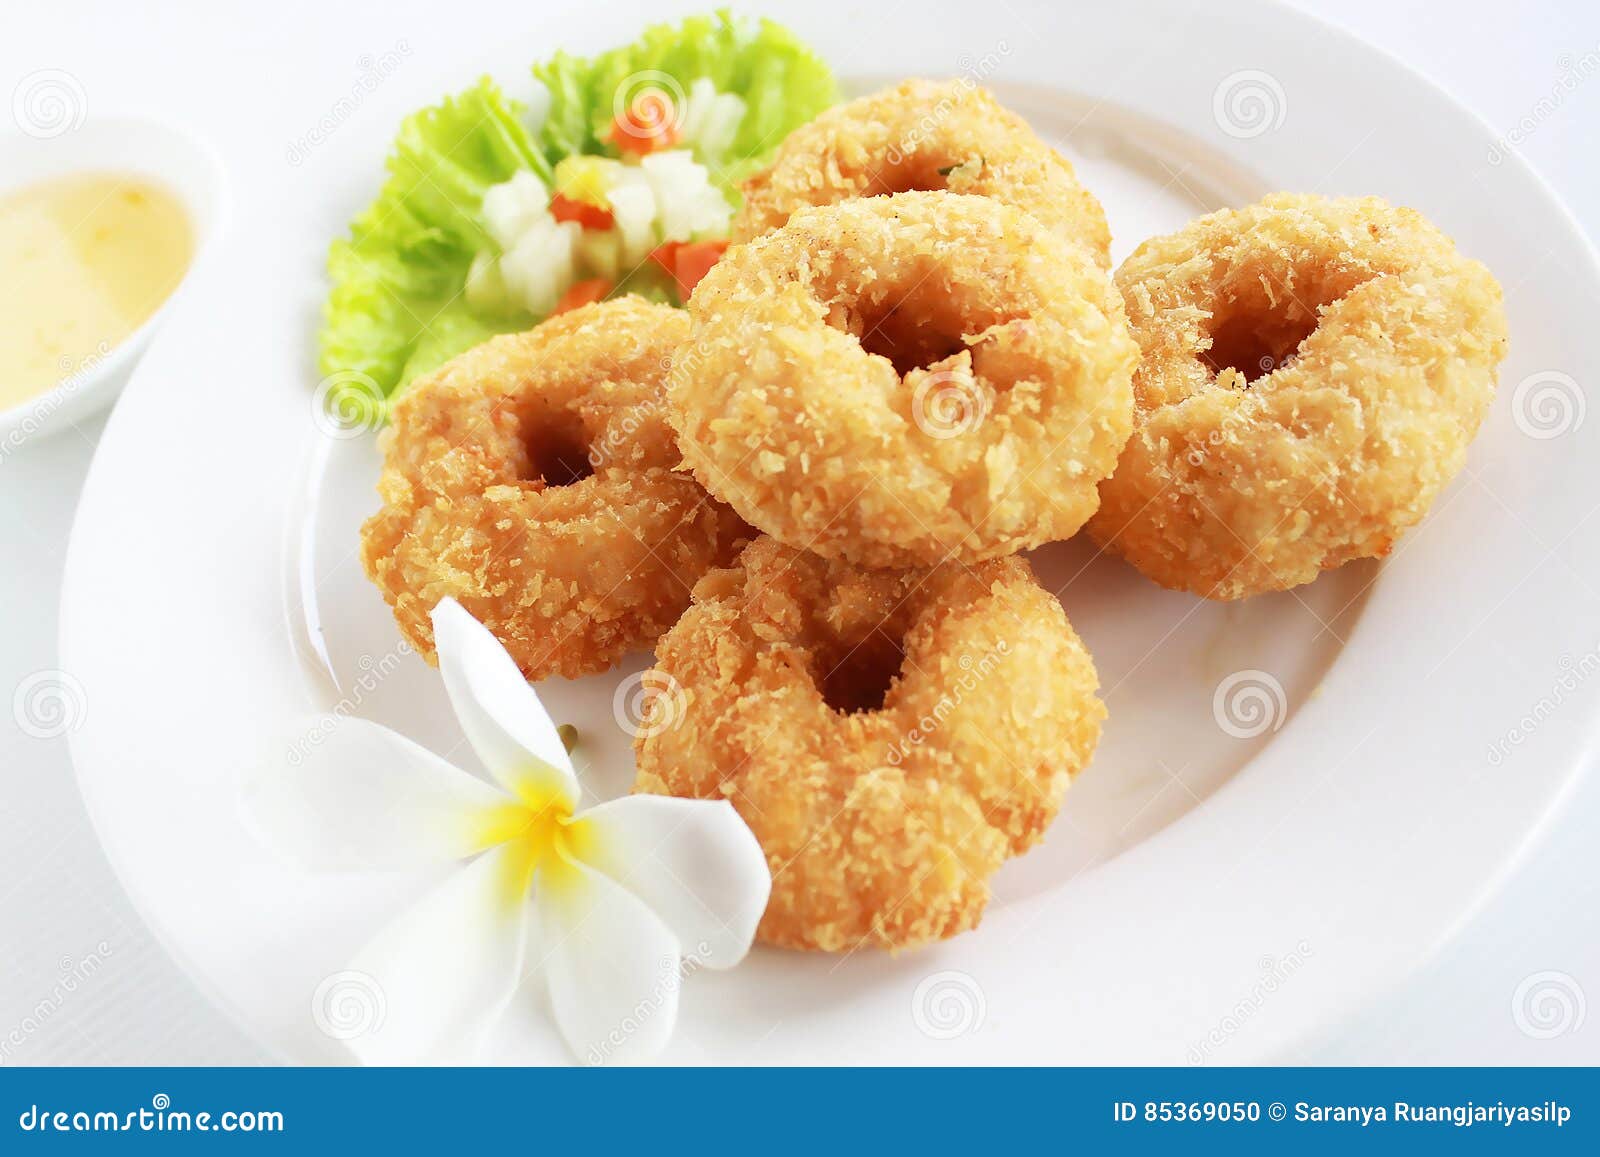 Deep Fried Shrimp Cake. stock photo. Image of grass, shrimp - 85369050